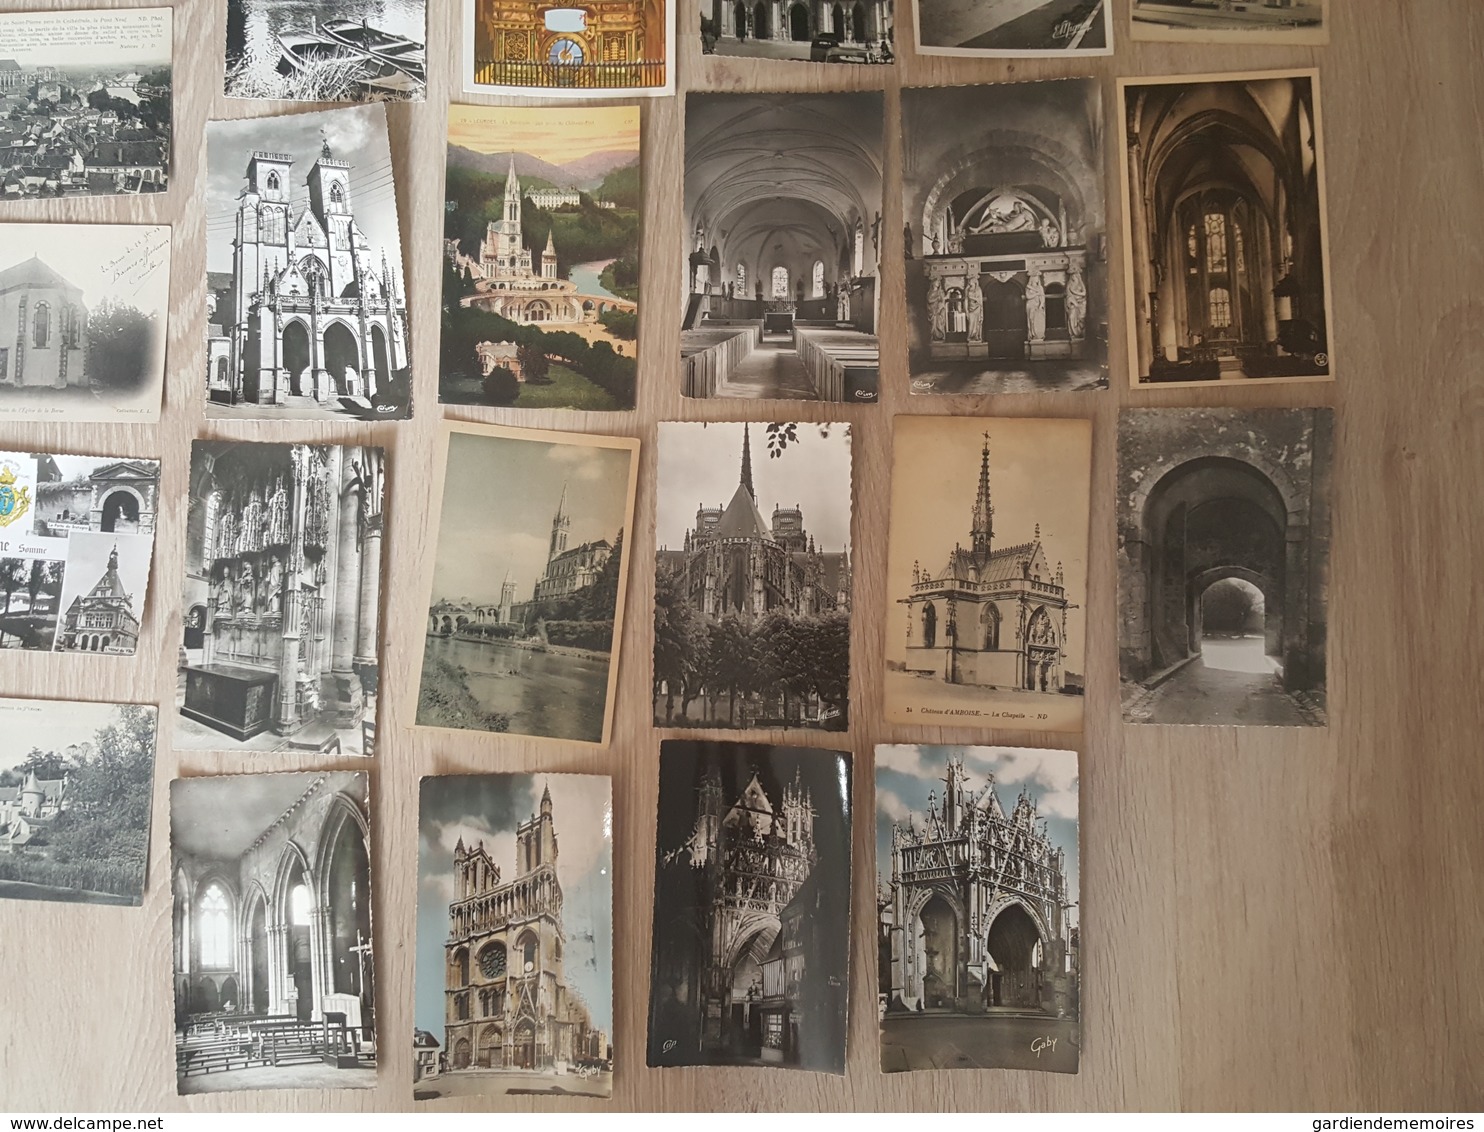 Eglises, Cathédrales, Abbayes, Cloitres (Intérieur et Extérieur) - 193 Cartes Postales toutes photographiées + 1 Carnet